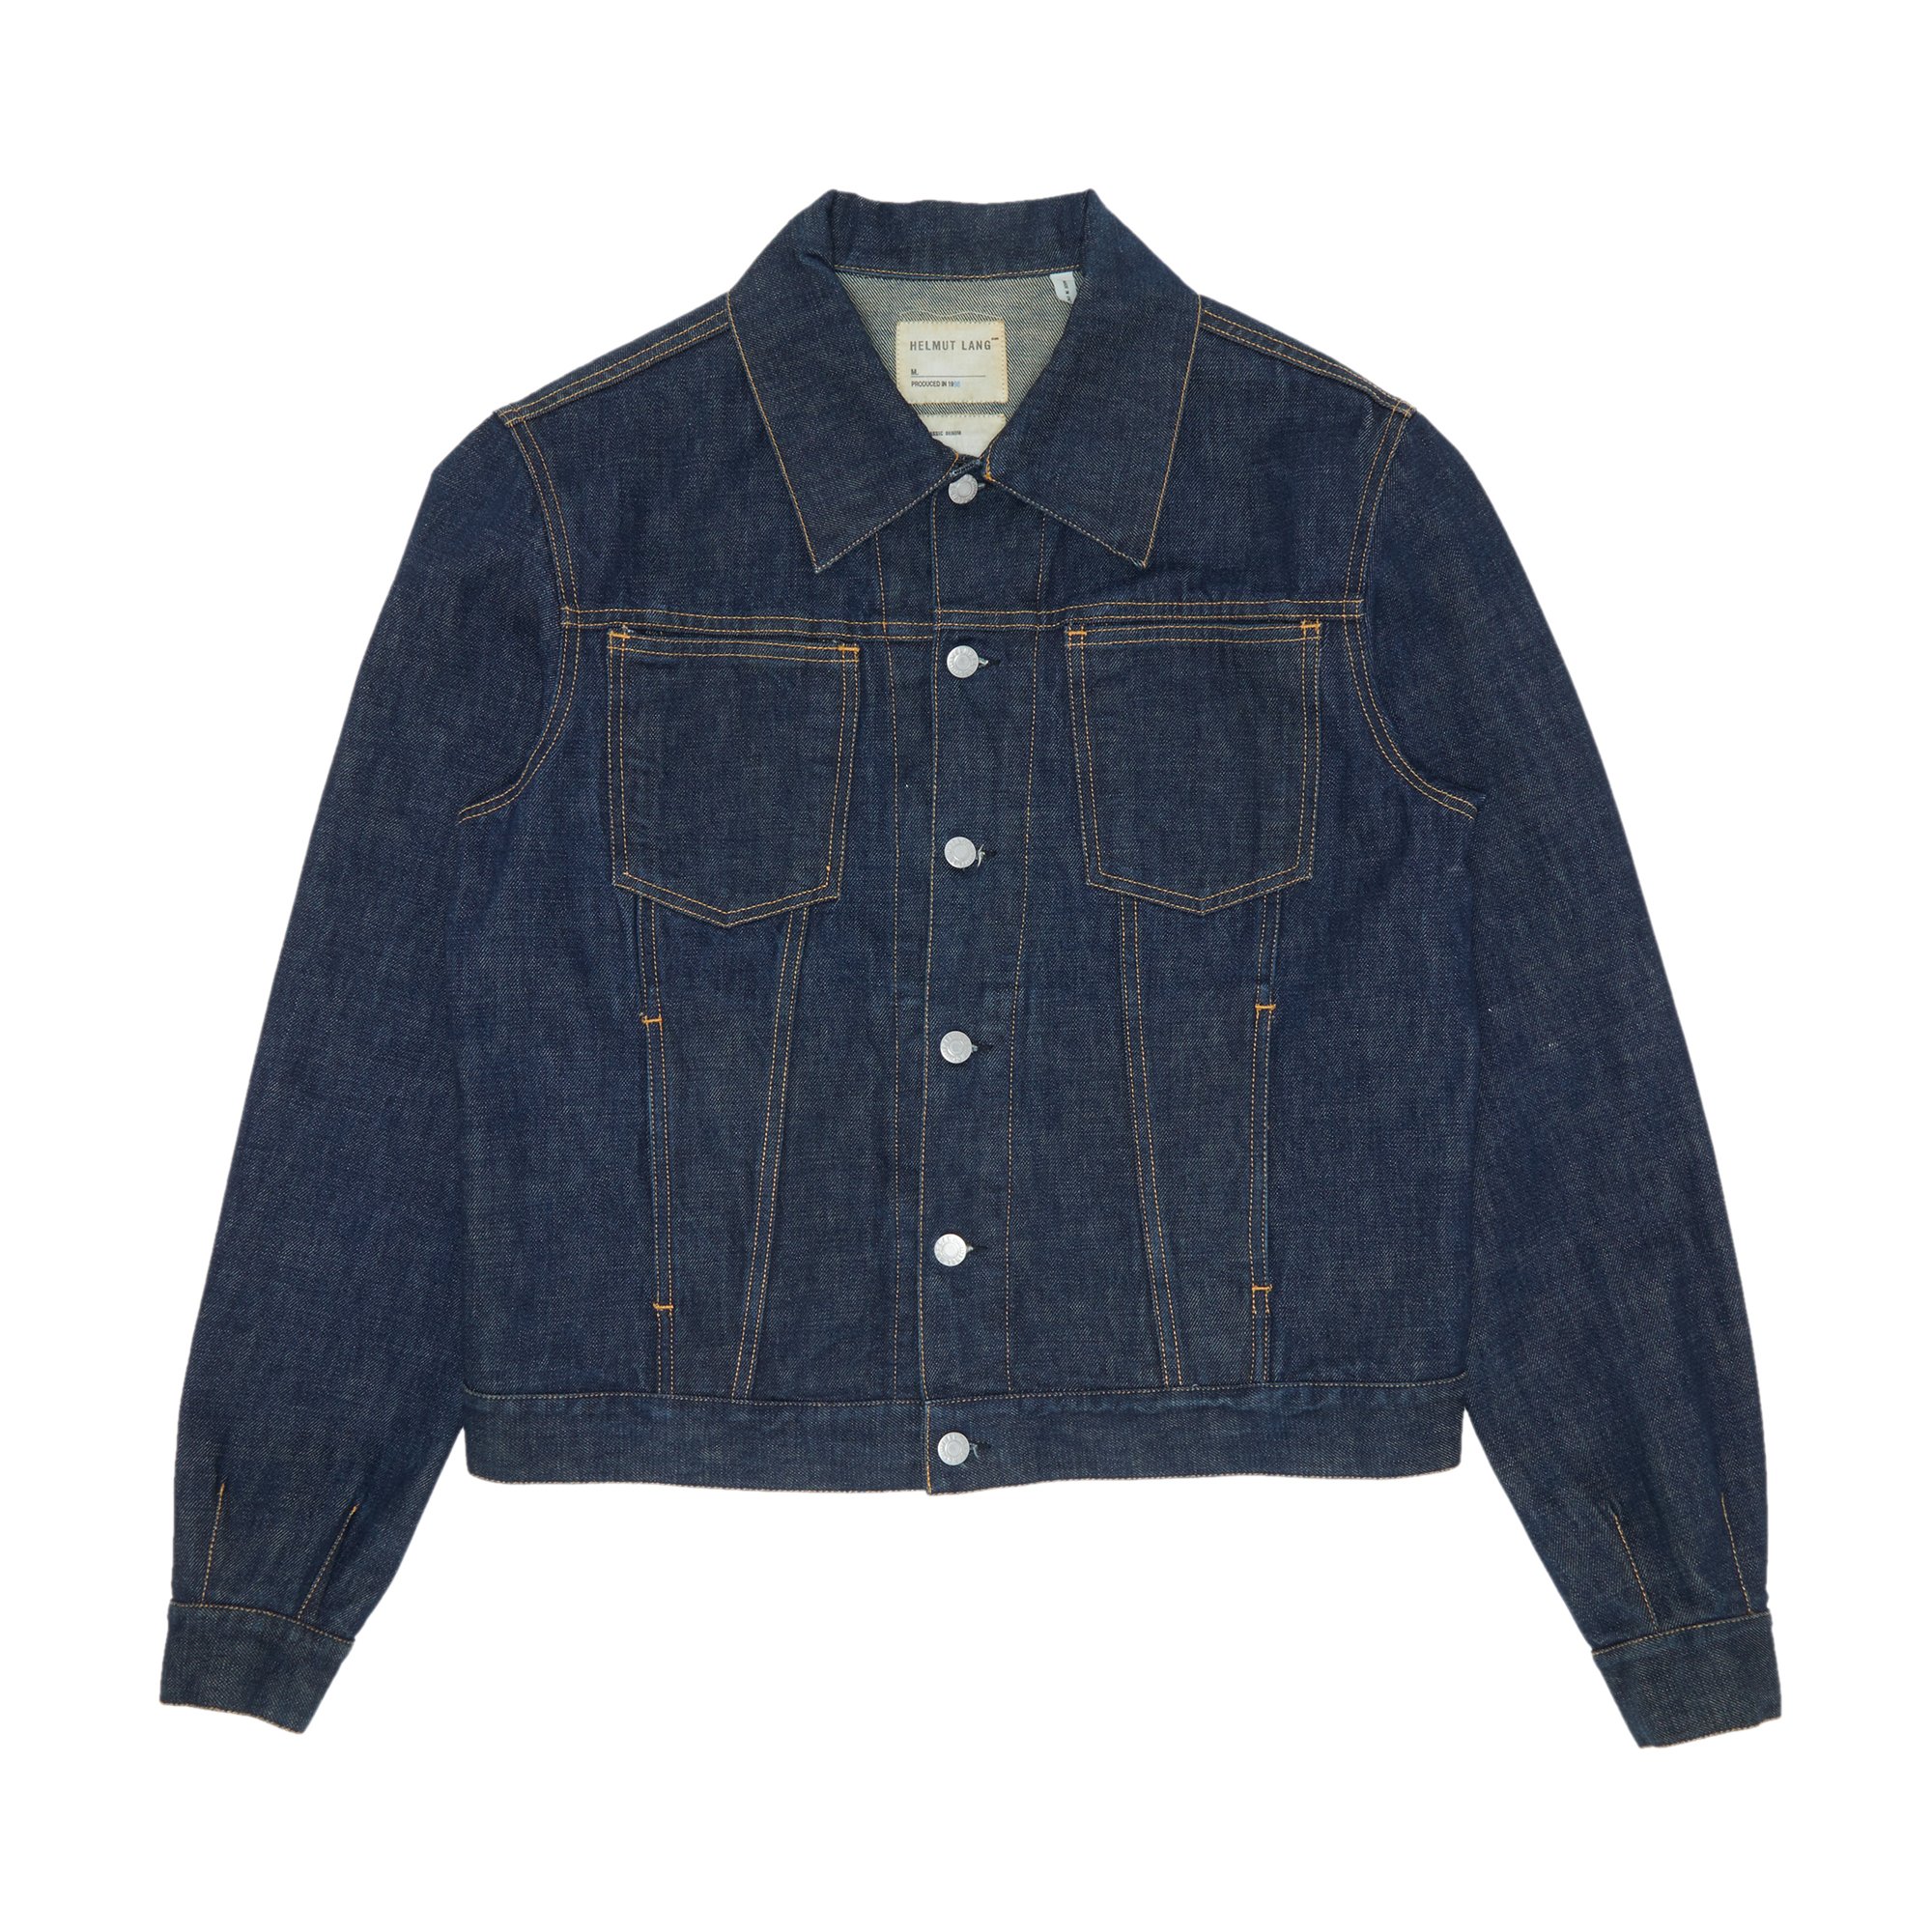 Buy Vintage Helmut Lang 4 Pocket Raw Denim Jacket 'Blue' - 0600 